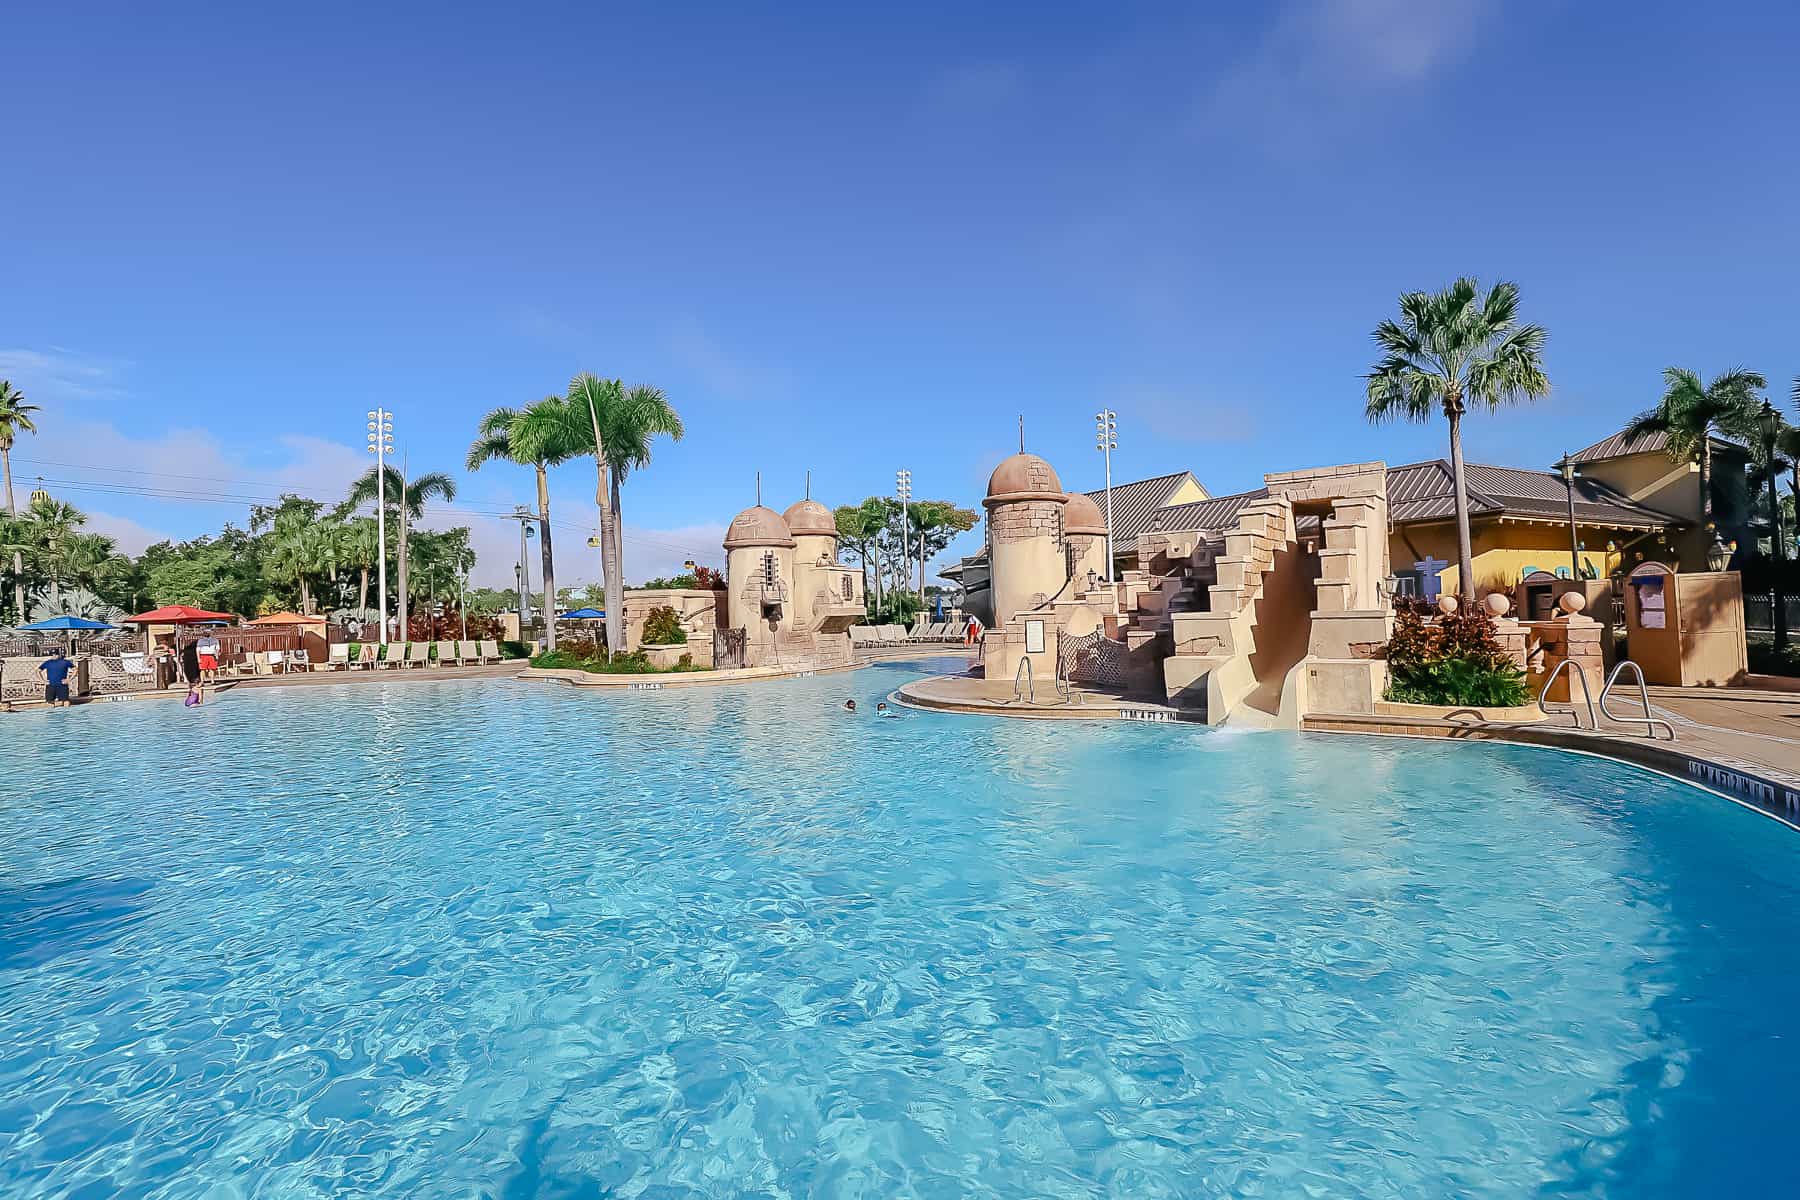 resort feature pool at Disney's Caribbean Beach Resort